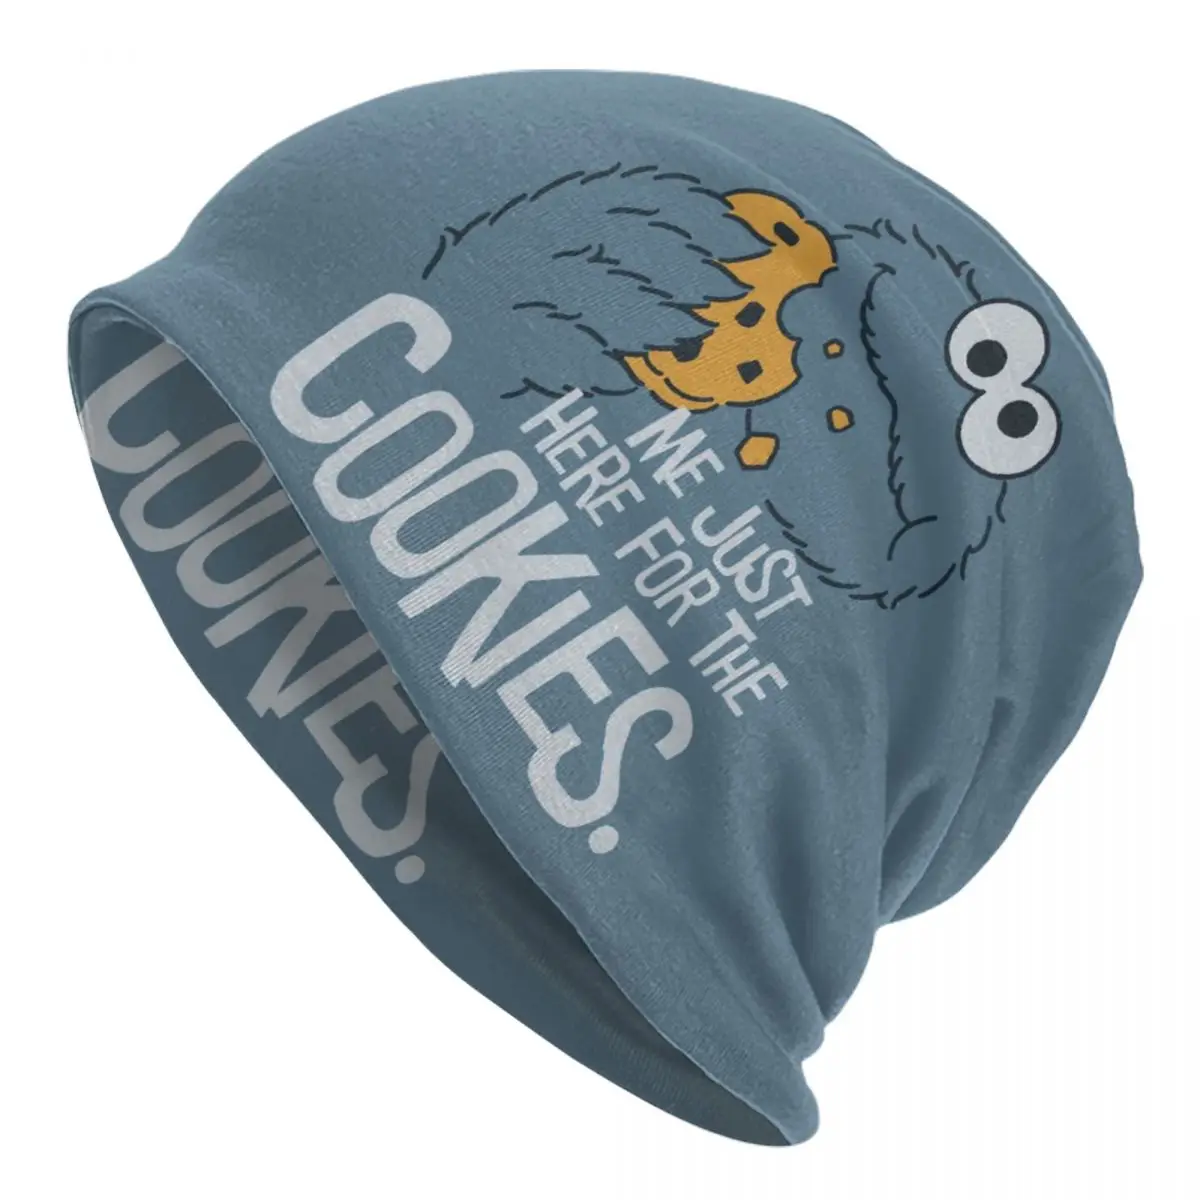 

Cookie Monster Bonnet Hat Knitting Hat Men Women Hip Hop Unisex Adult Cartoon Sesame Street Warm Winter Skullies Beanies Cap